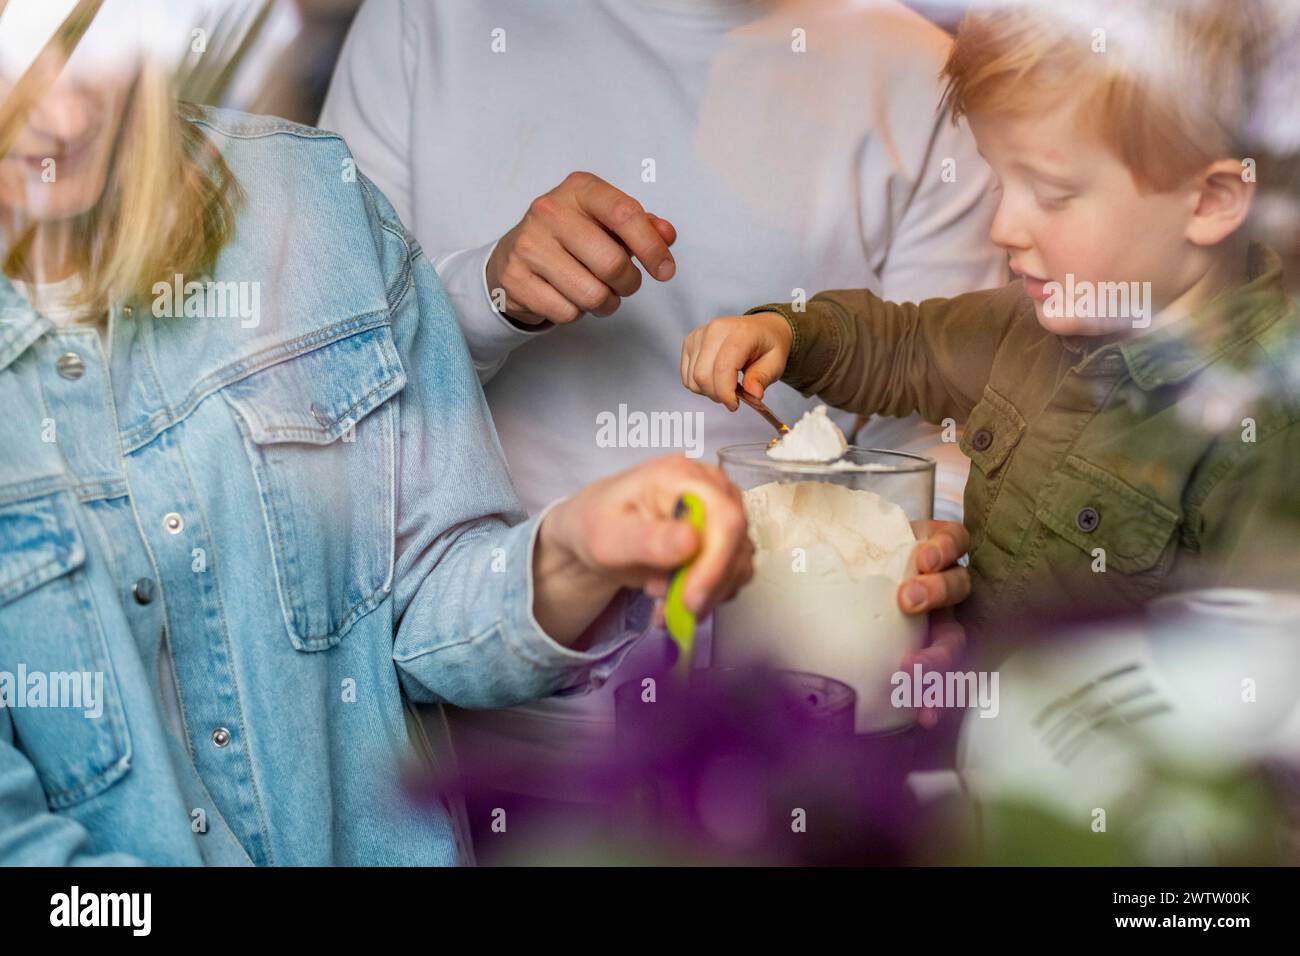 Familienmoment als kleines Kind lernt, mit Hilfe von Erwachsenen Mehl zum Backen zu schöpfen. Stockfoto